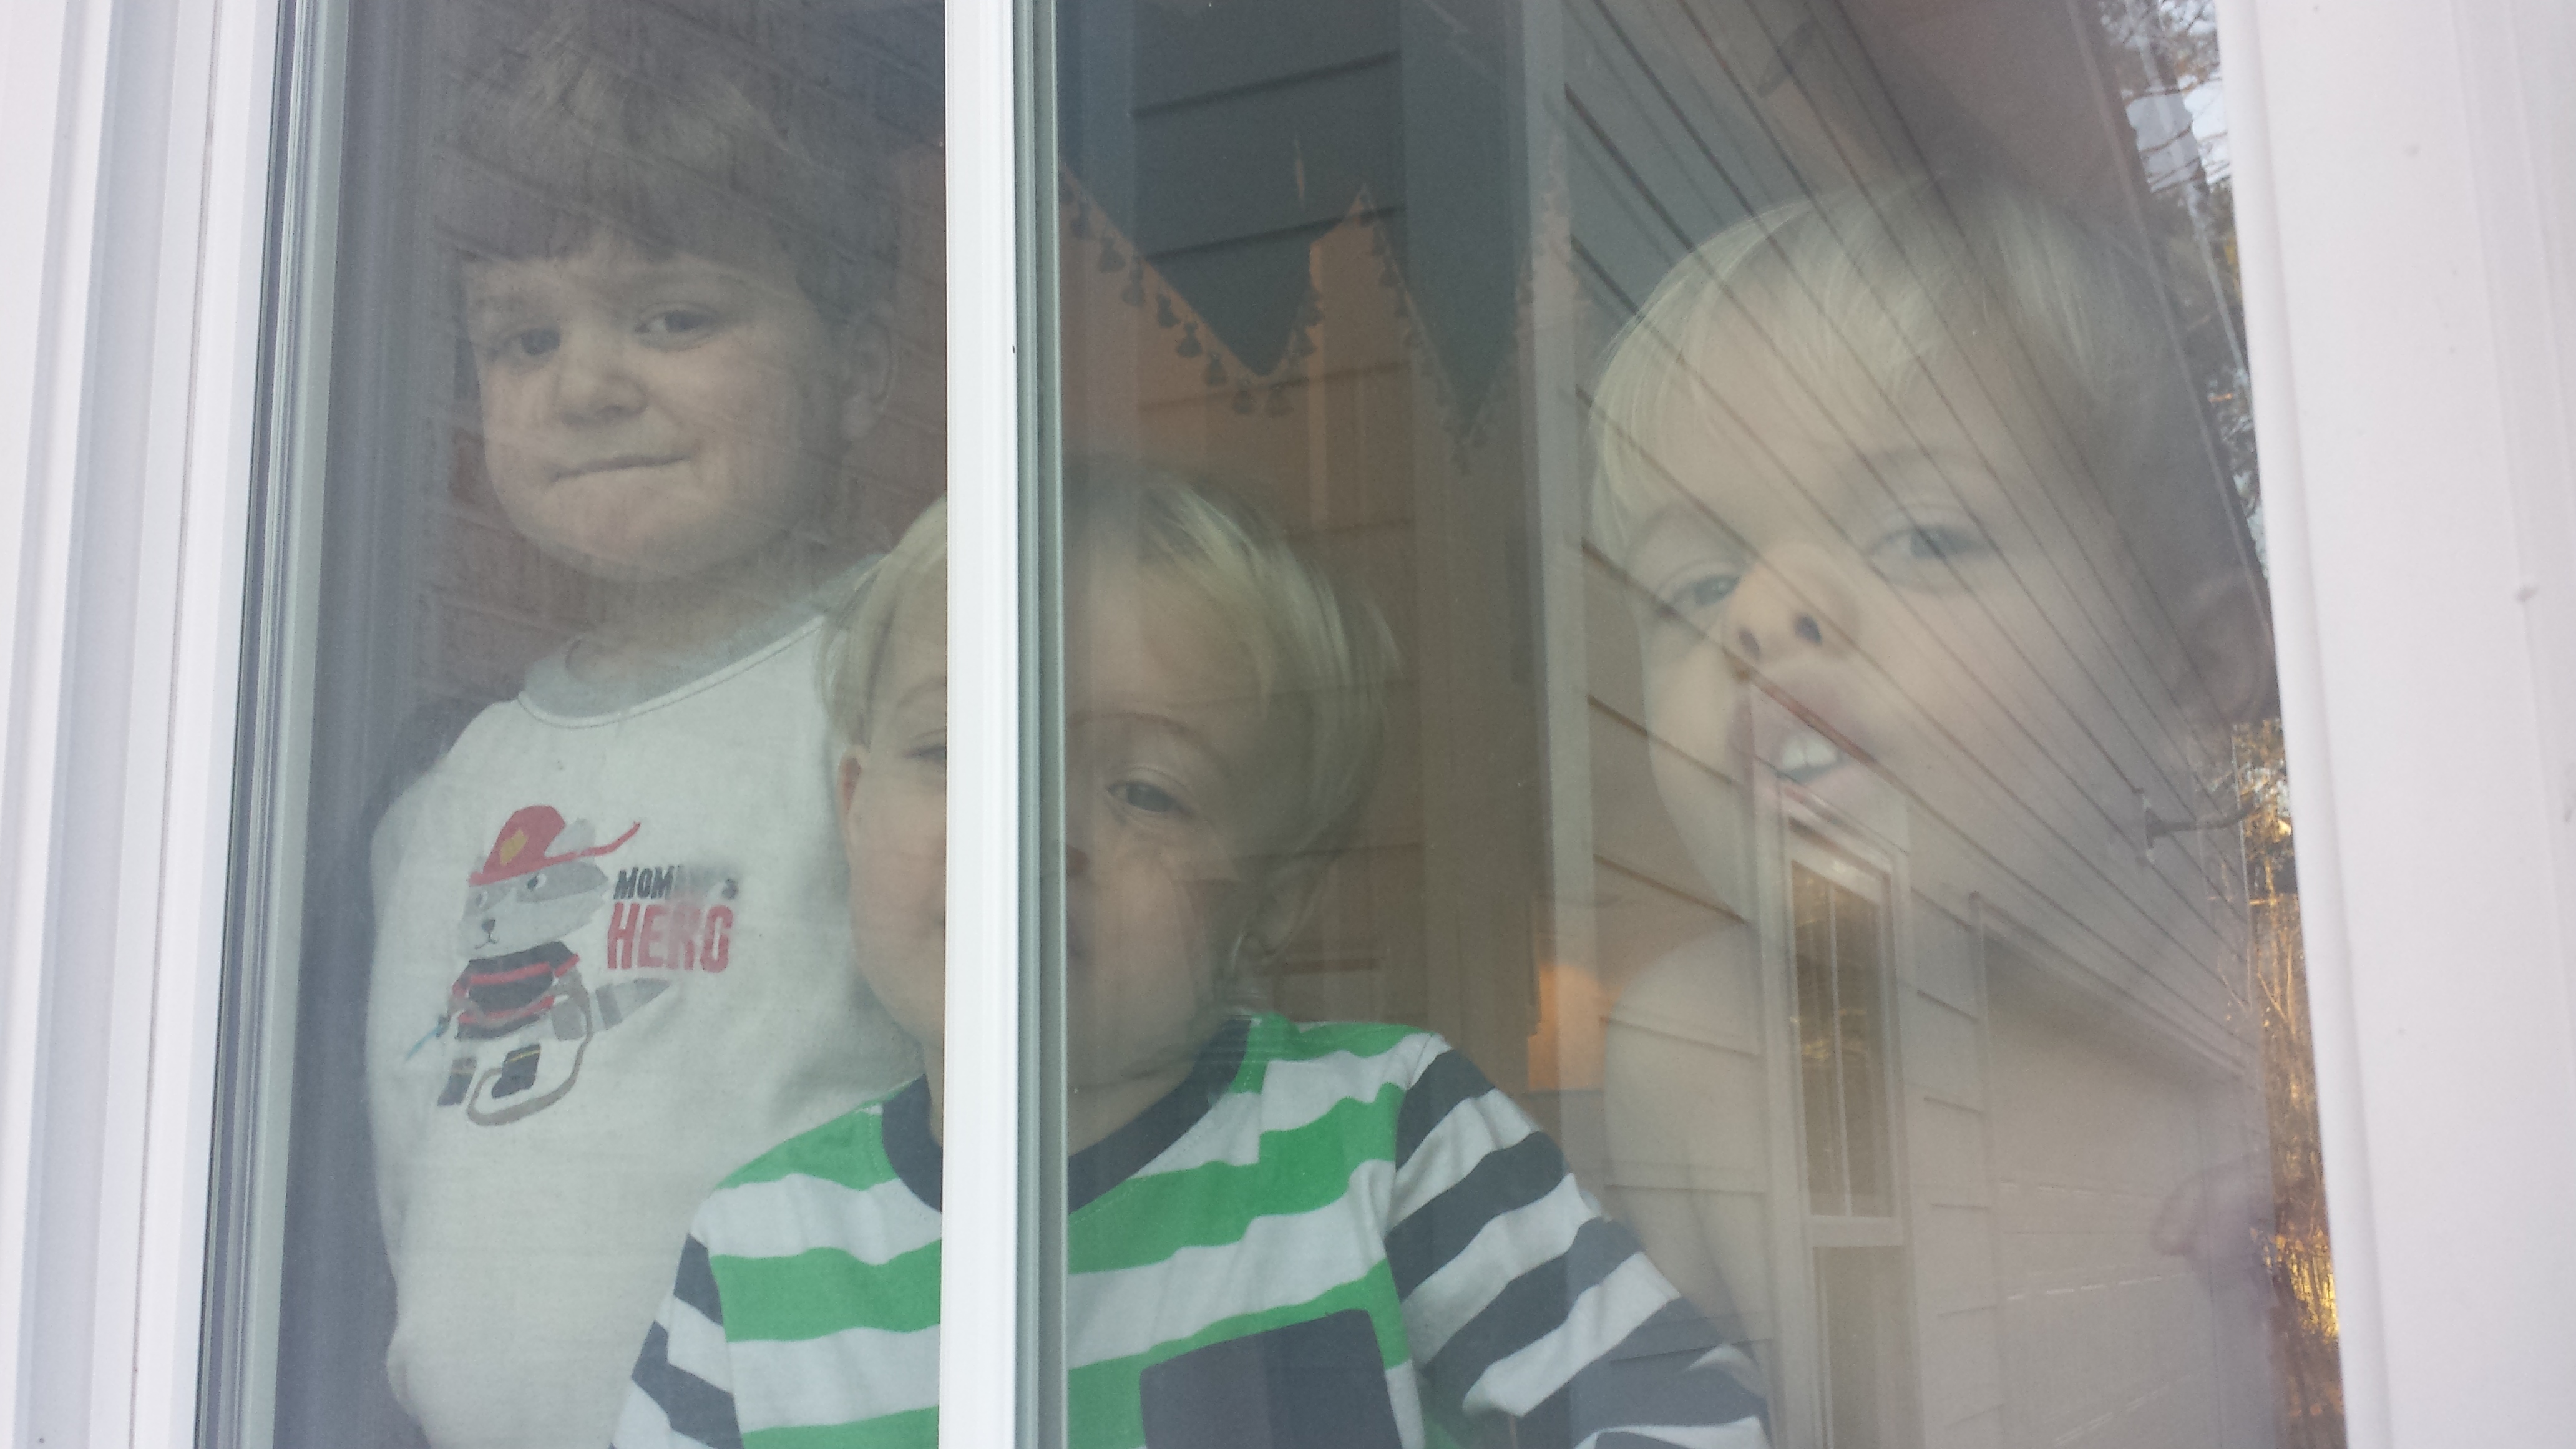 Three boys against a window